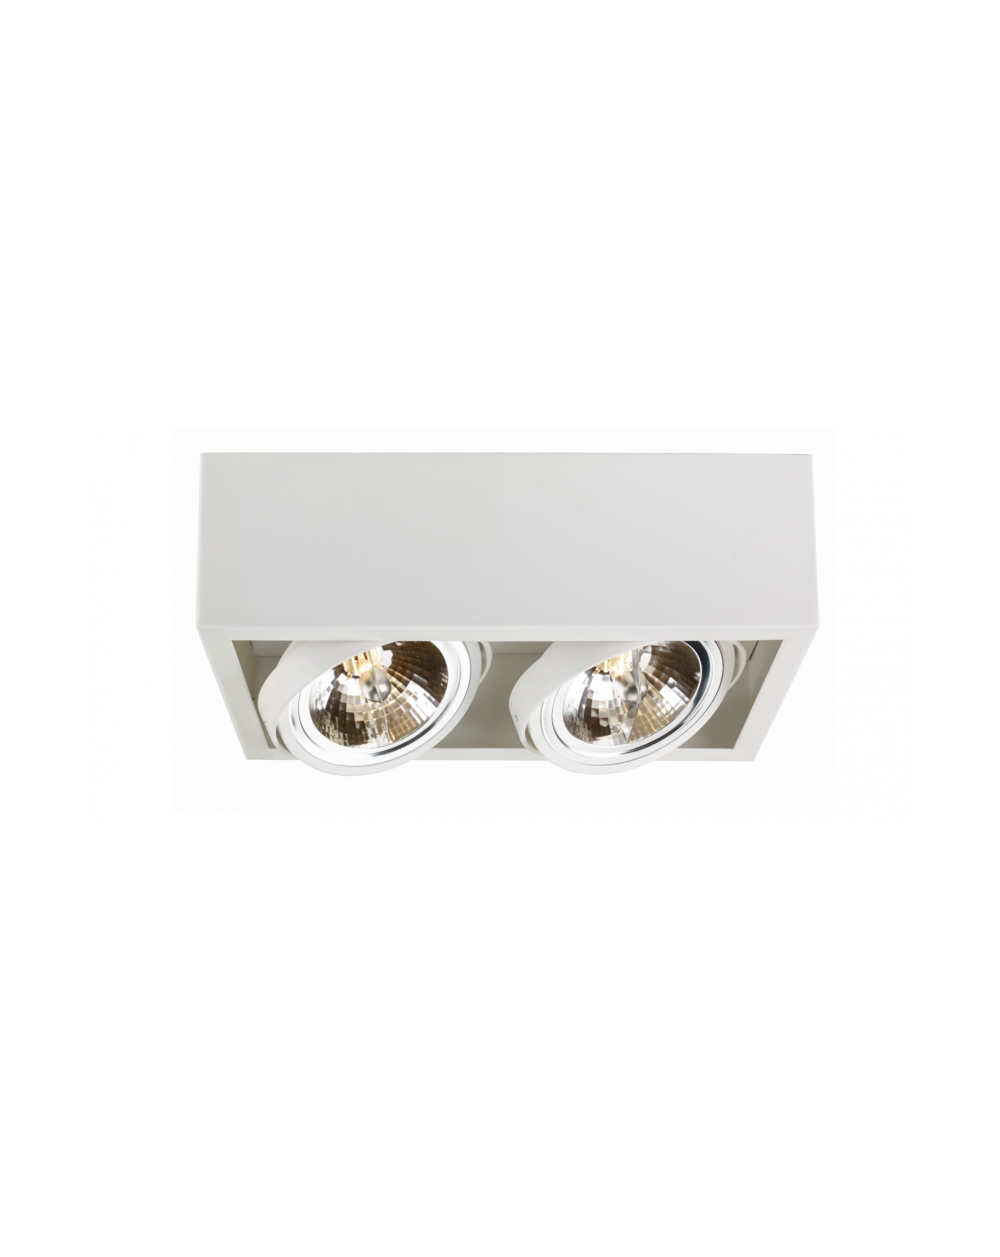 Oprawa natynkowa CUBE 2 QR111 w kolorze białym - Kaspa lampa sufitowa w kształcie prostopadłościanu